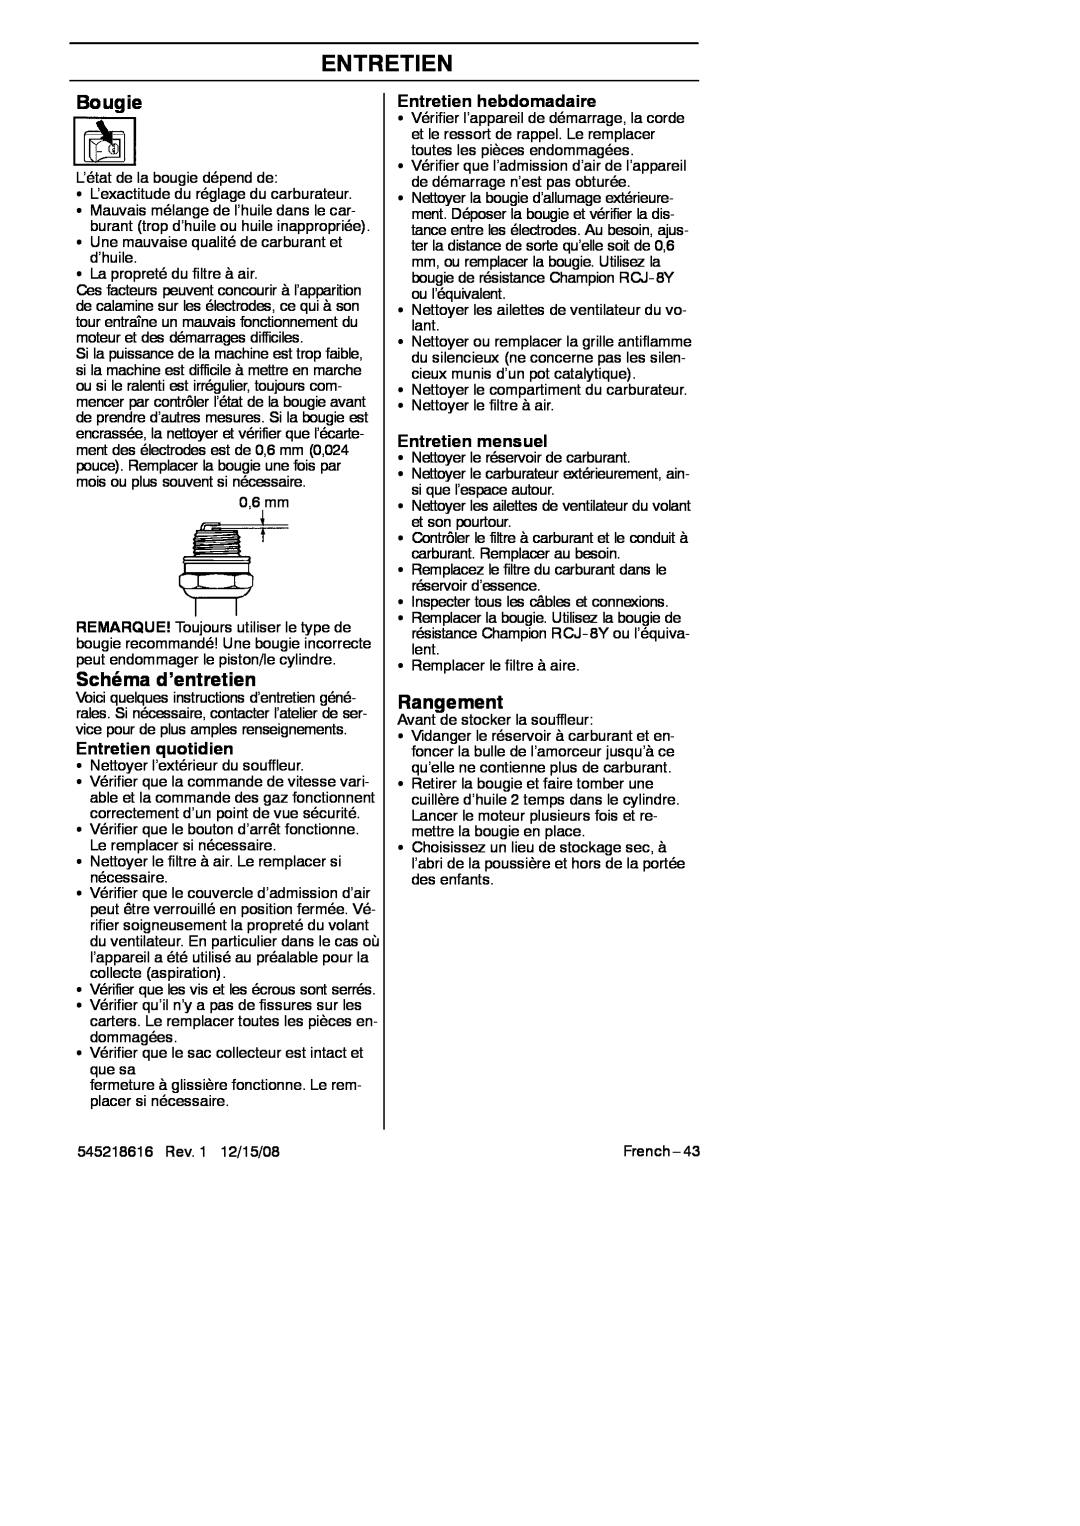 RedMax HB280 manual Bougie, Schéma d’entretien, Rangement, Entretien quotidien, Entretien hebdomadaire, Entretien mensuel 